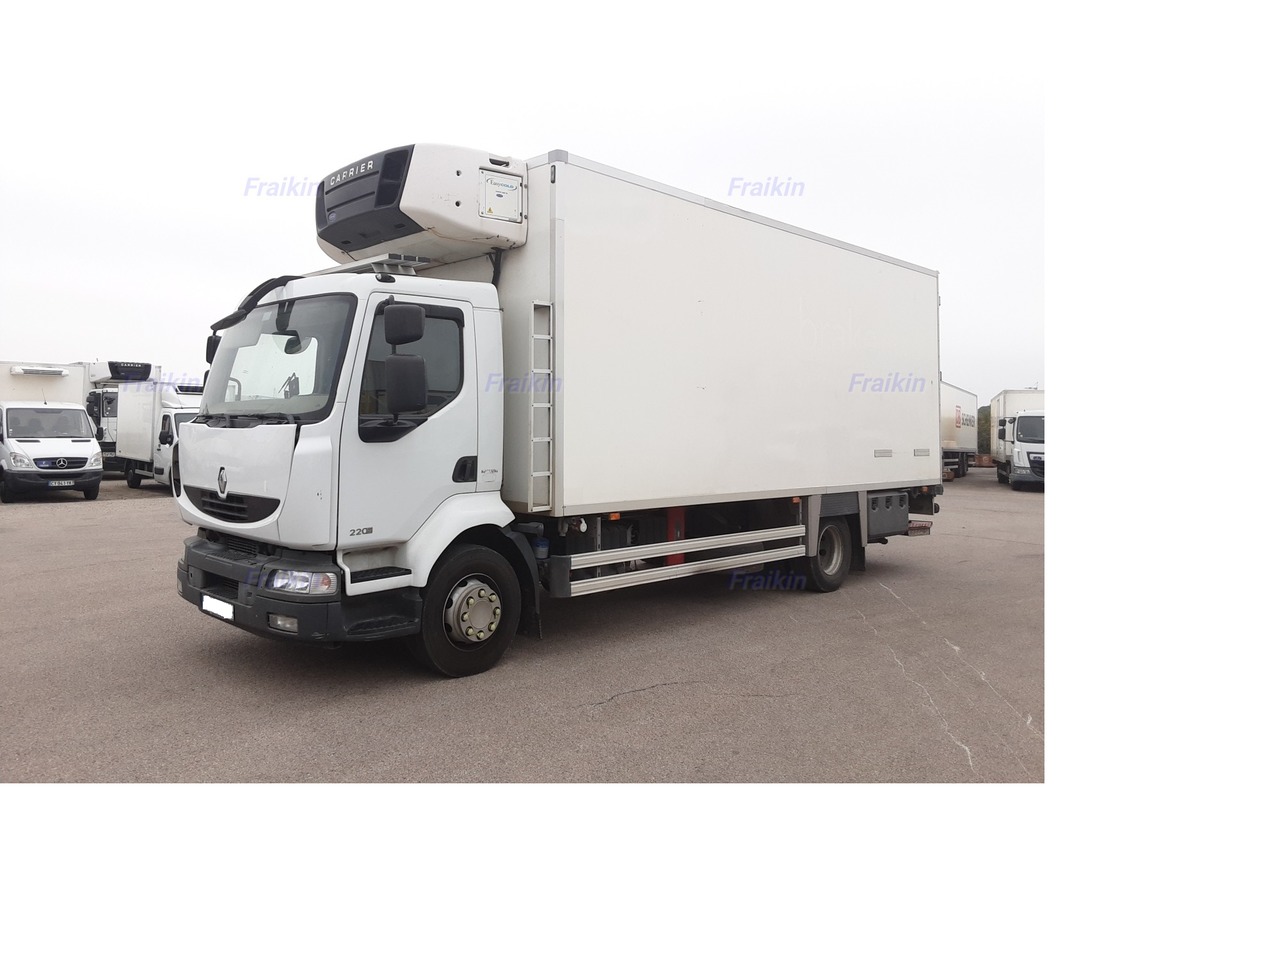 Samochód ciężarowy chłodnia dla transportowania żywności RENAULT MIDLUM FRIGO MIDLUM 220.14 BITEMPERATURA: zdjęcie 2